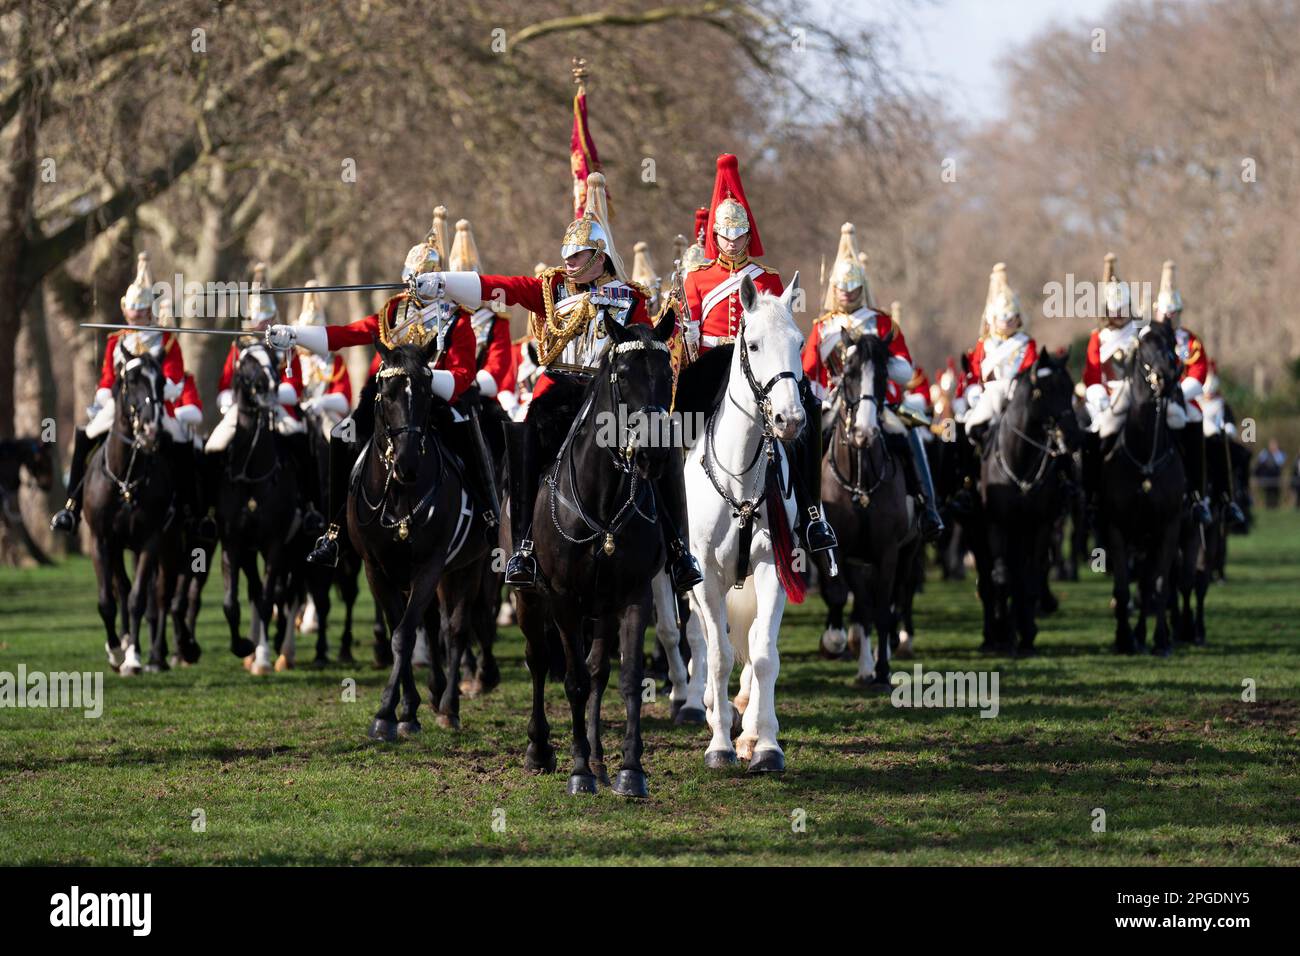 Mitglieder der Haushaltskavallerie auf Parade während der jährlichen Inspektion des Haushaltskavallerie-Regiments im Hyde Park, London. Bilddatum: Mittwoch, 22. März 2023. Stockfoto